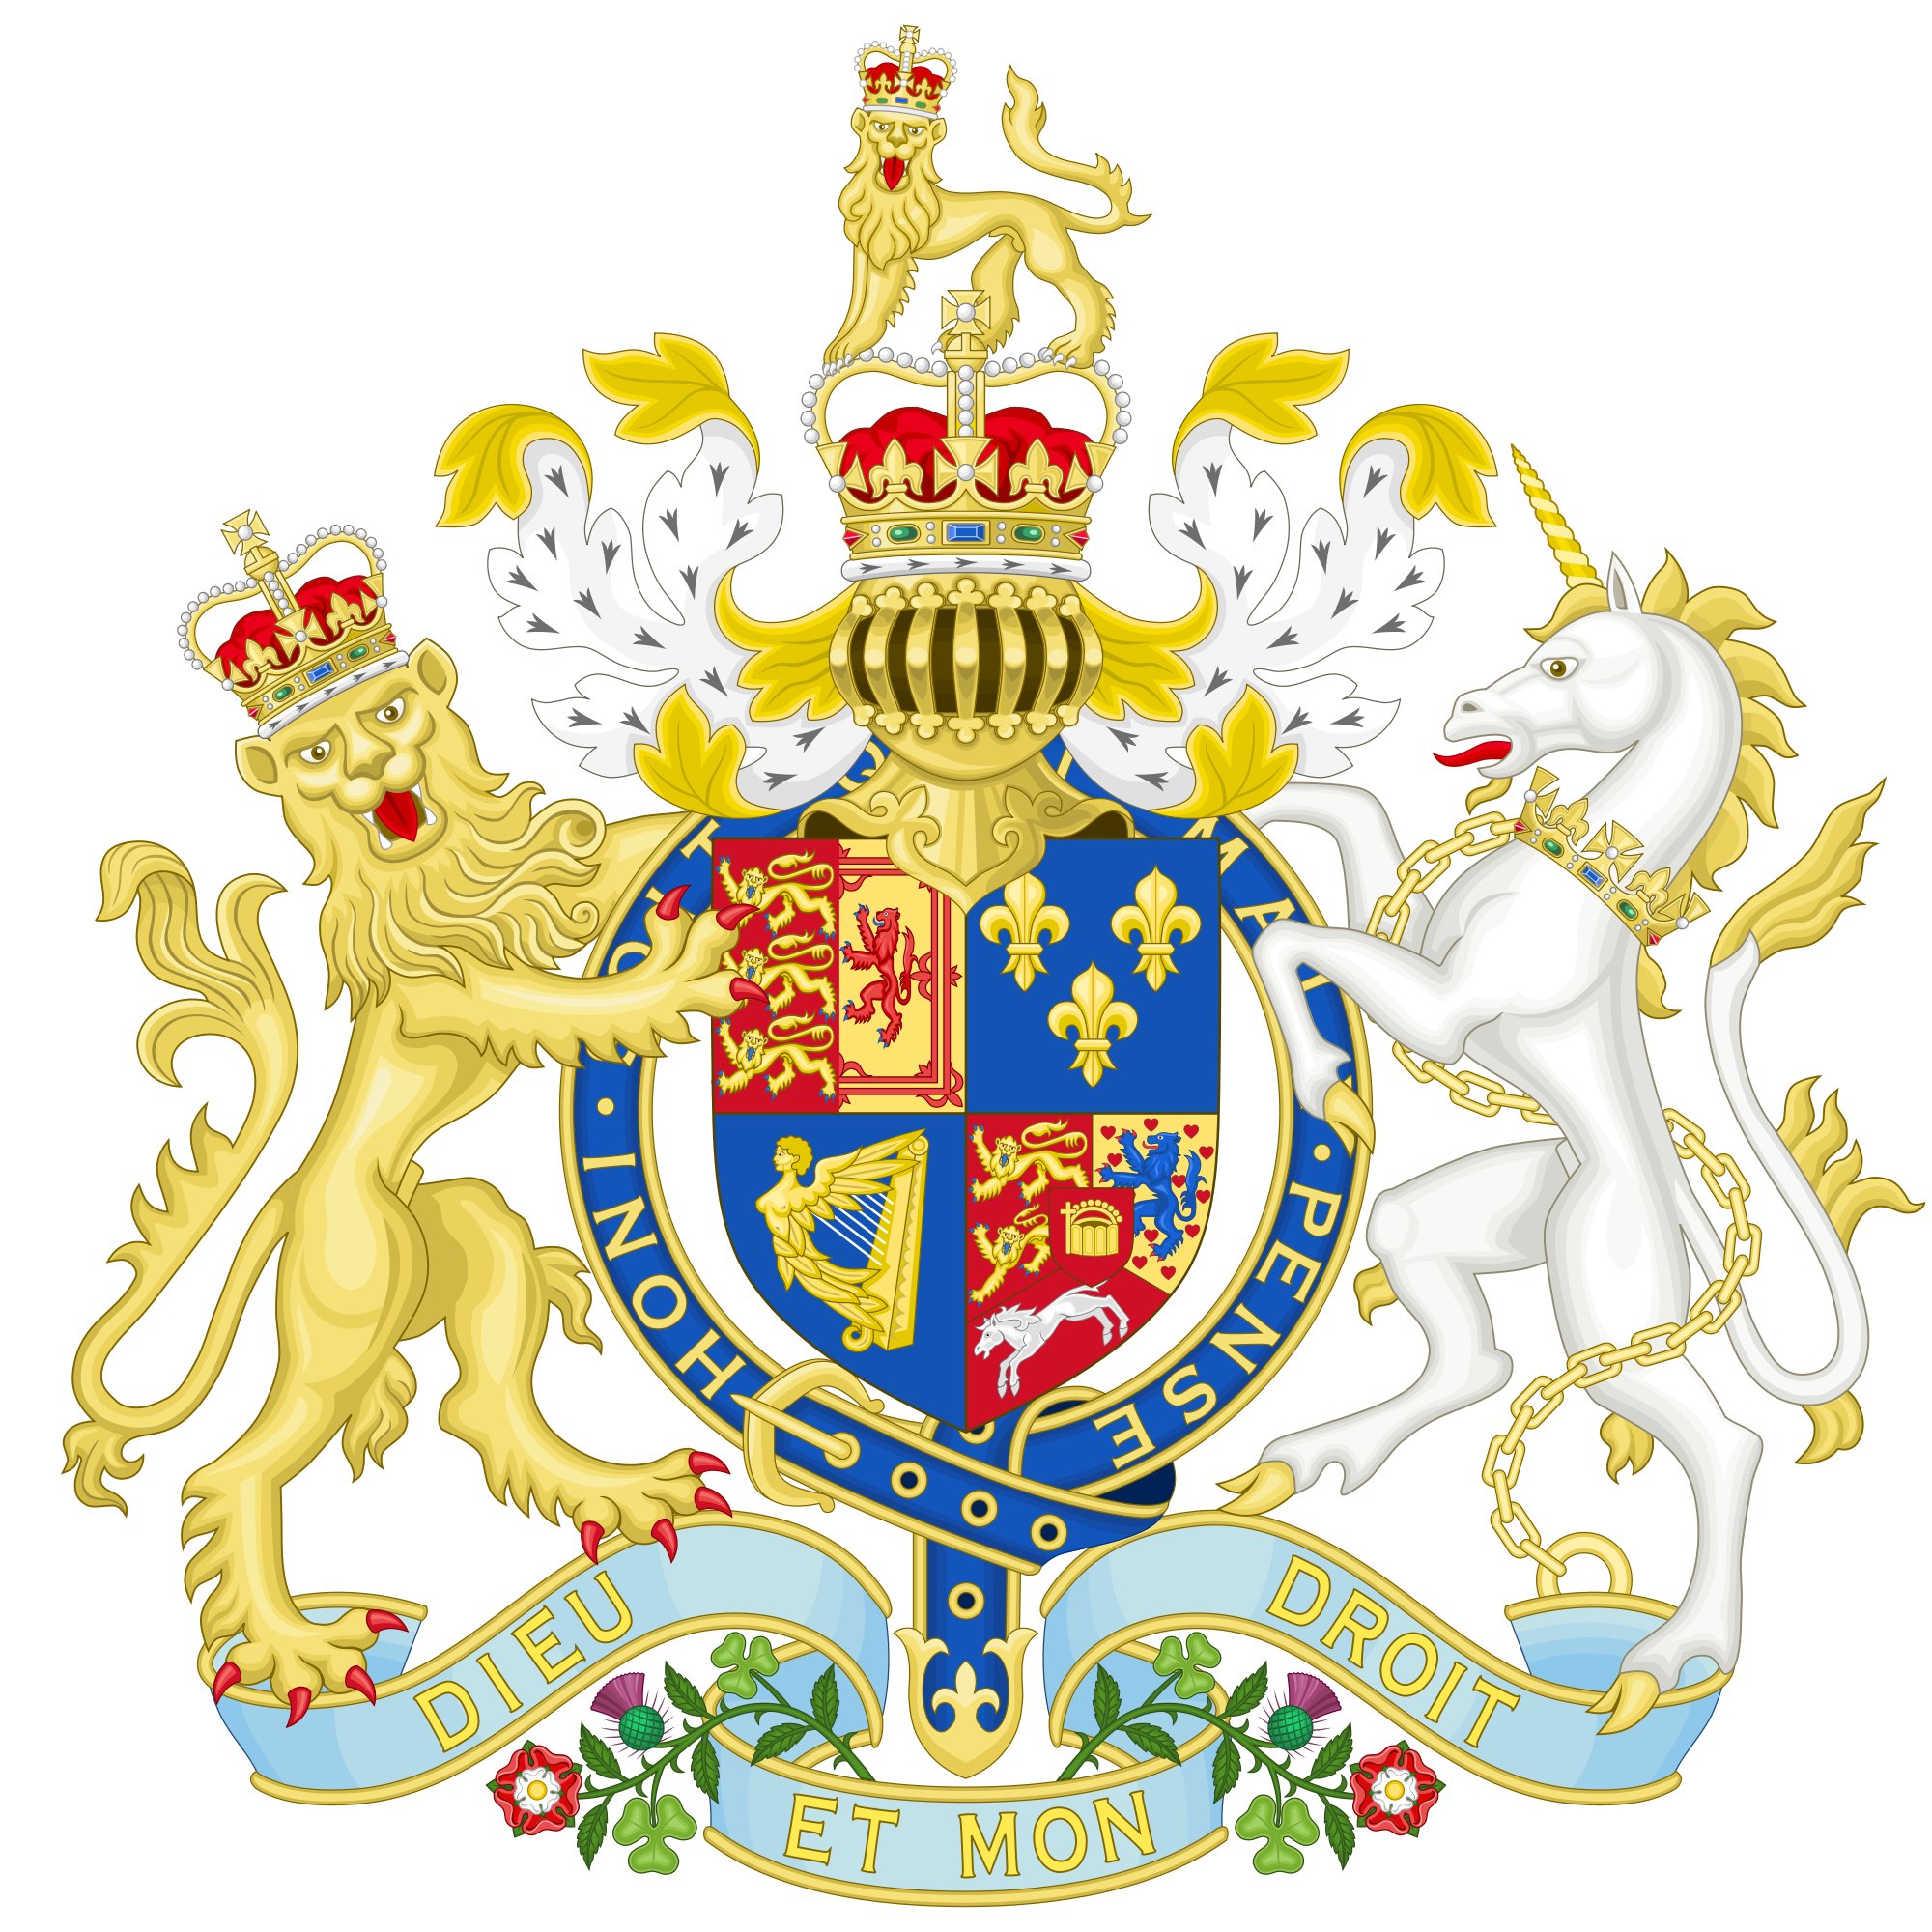 这是英国国徽,简单的介绍一下 两只动物中,左边戴皇冠的狮子是指